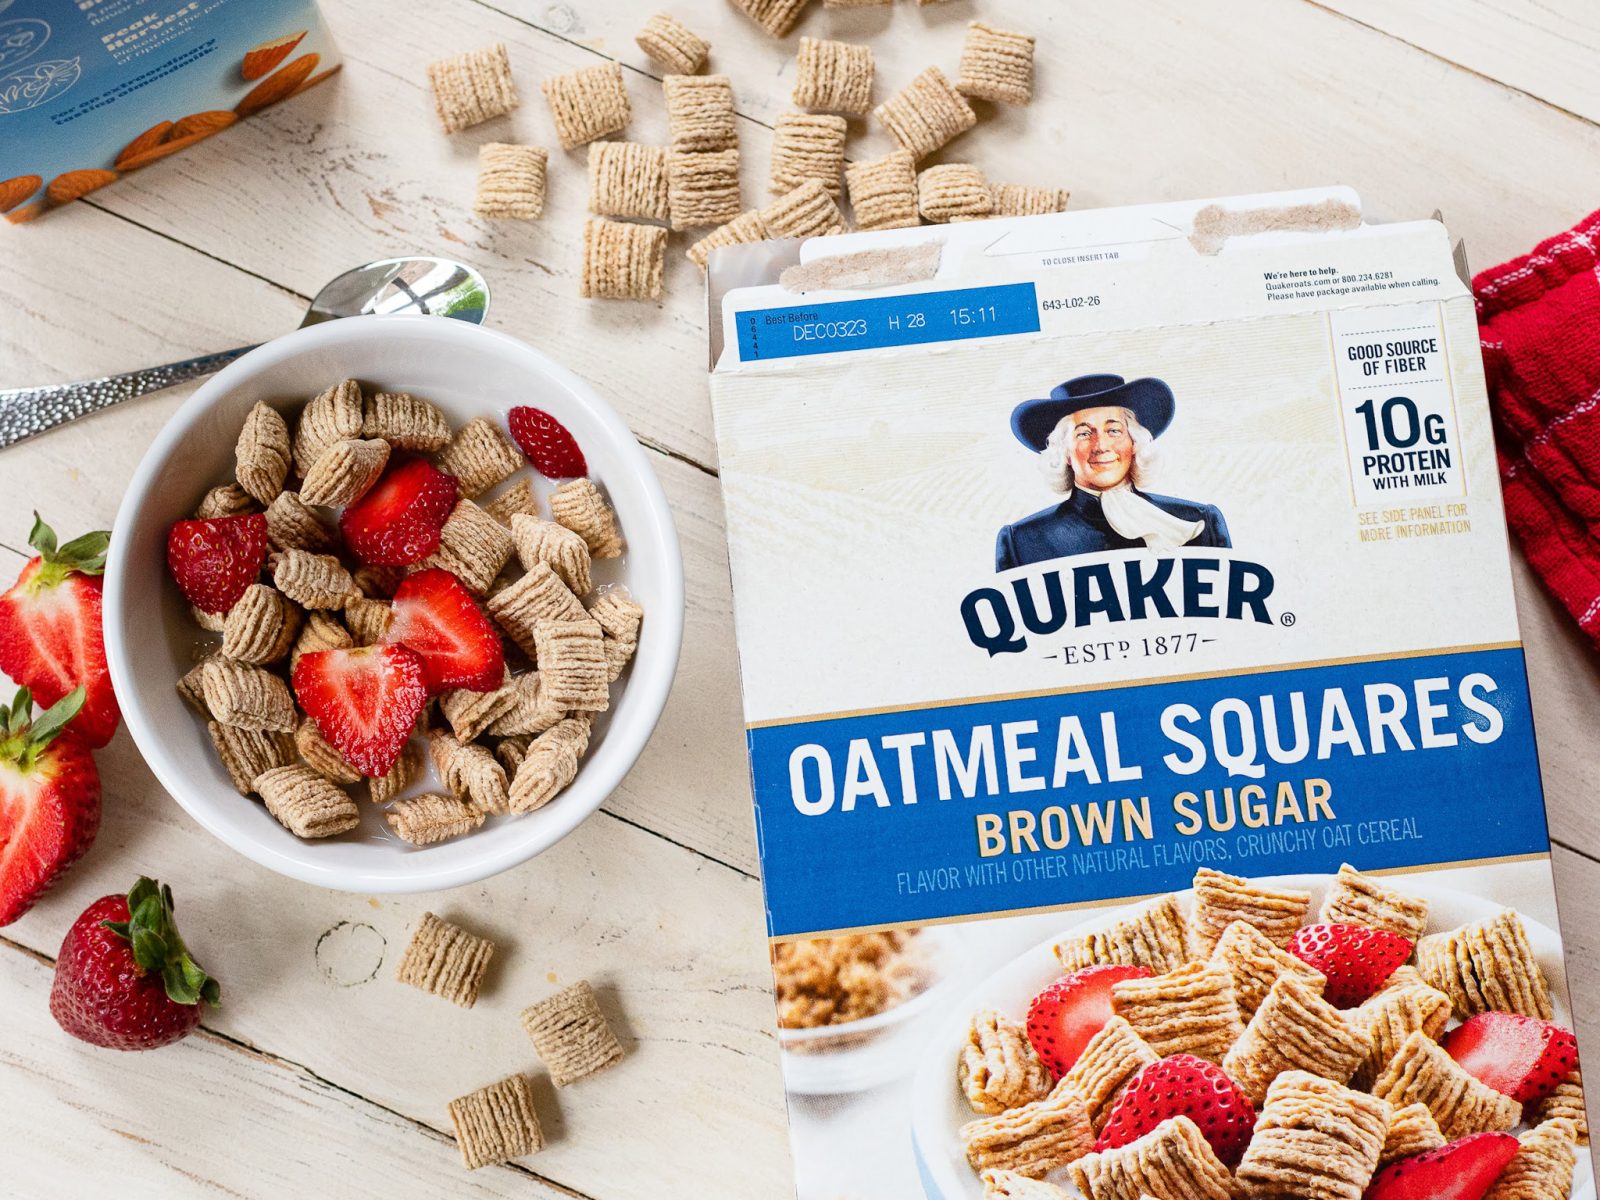 Quaker Oatmeal Squares Cereal Just $2.40 At Publix